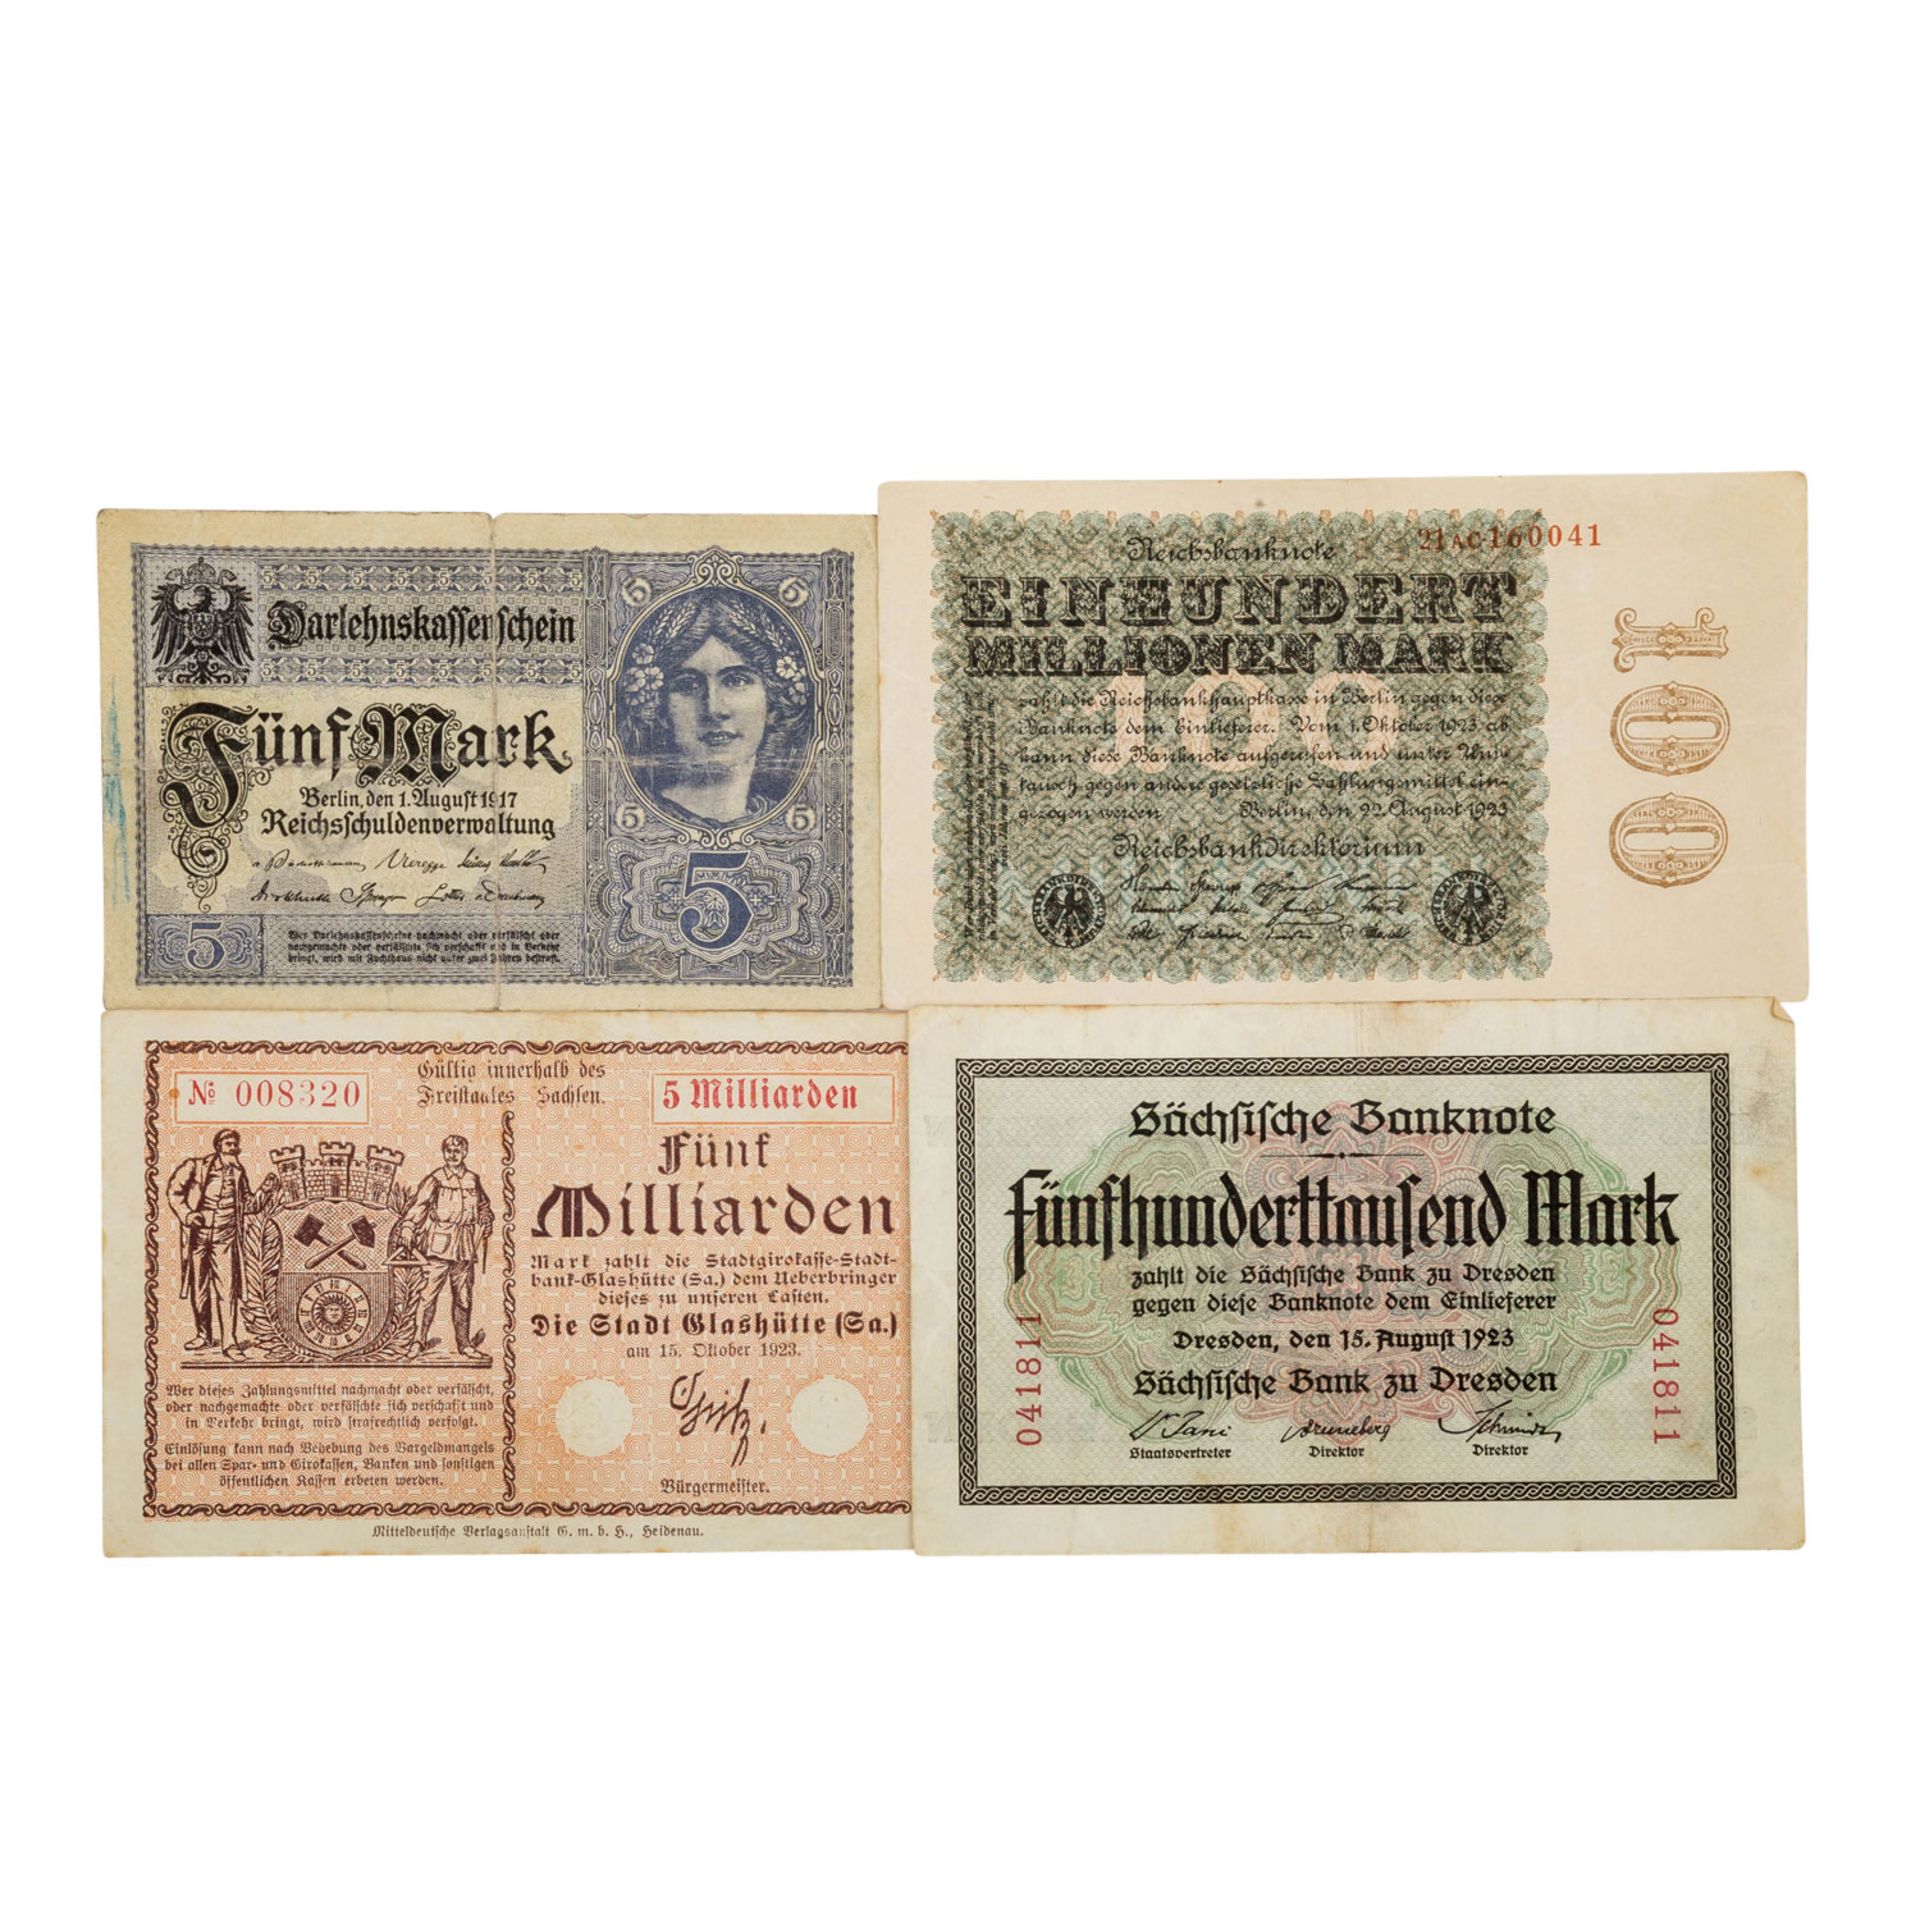 Banknoten der Weimarer Republik, Deutschland 1.Hälfte 20.Jh. - - Bild 4 aus 7